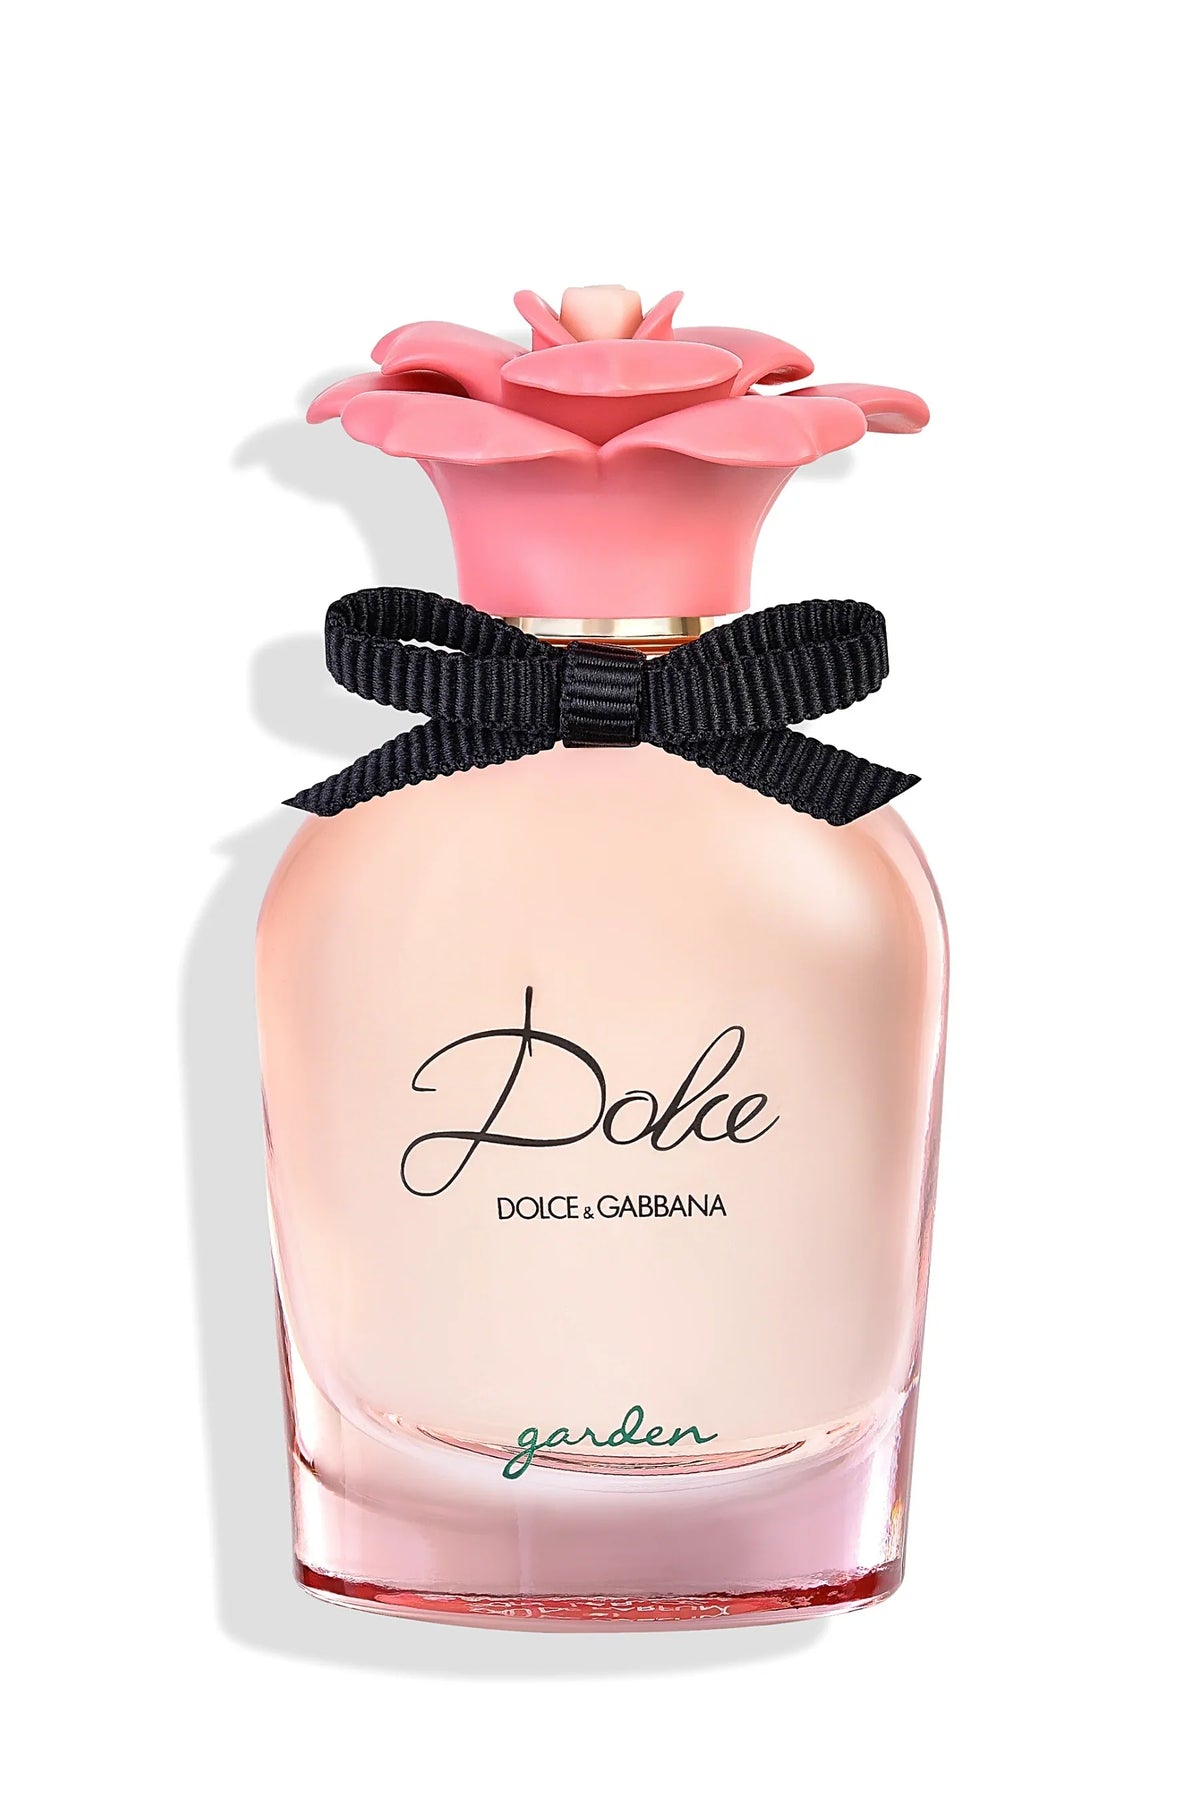 Dolce & Gabbana Dolce Garden (EDP) Sample